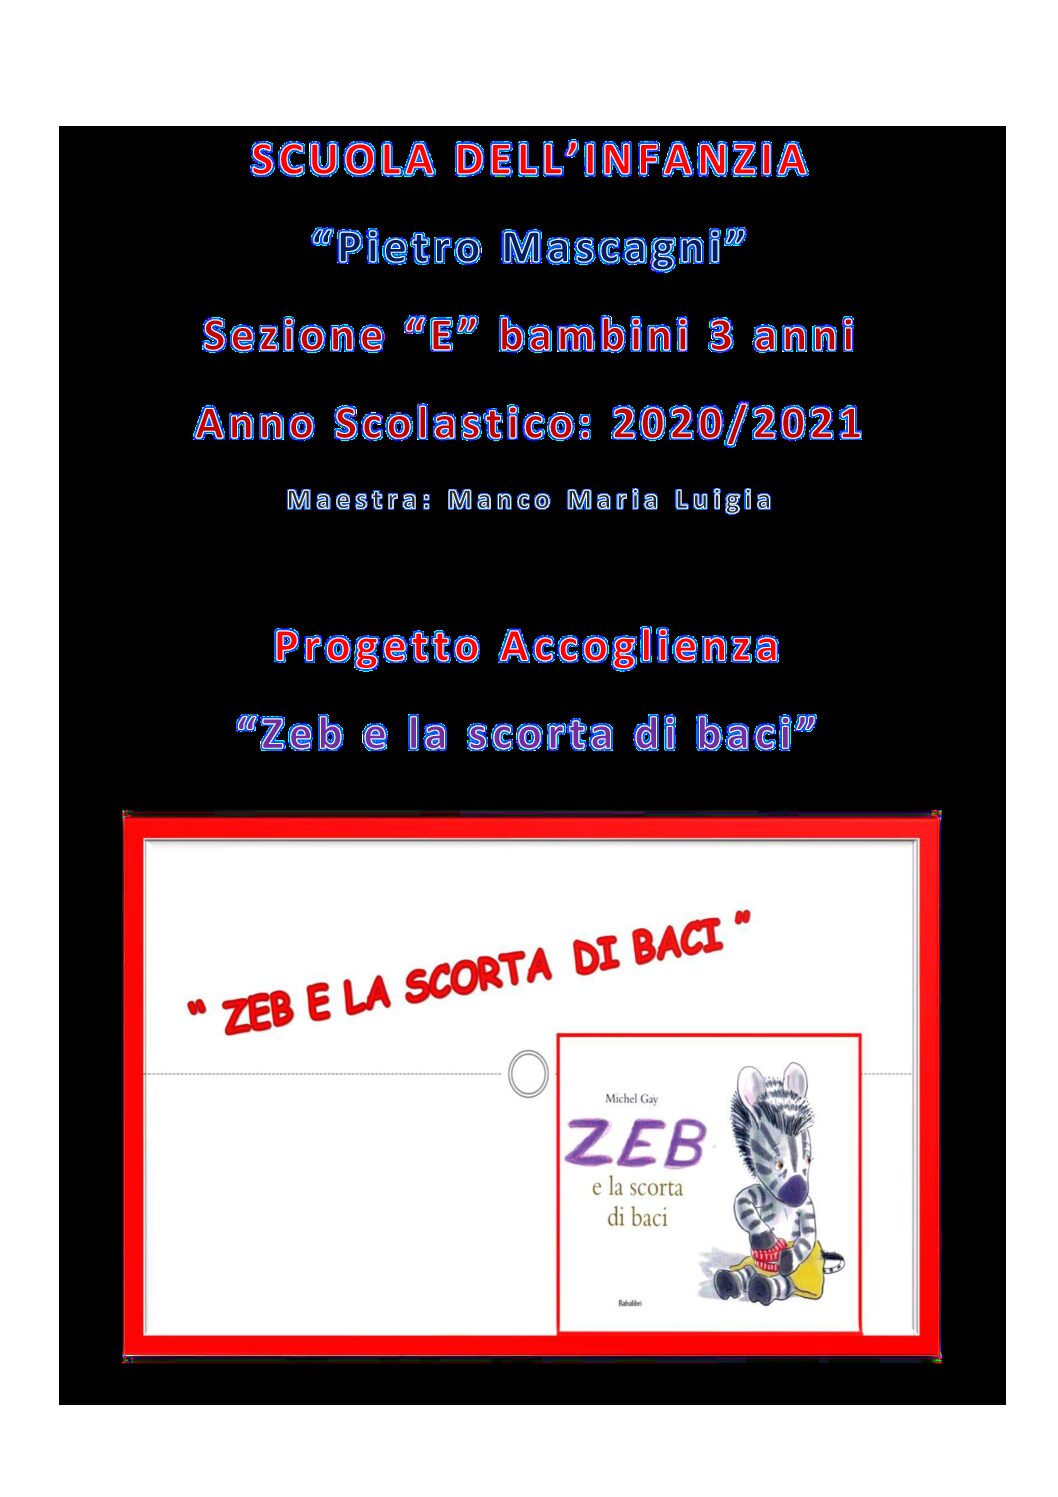 UDA Progetto Accoglienza - Zeb e la scorta di baci - Istituto Comprensivo  Mascagni di Prato